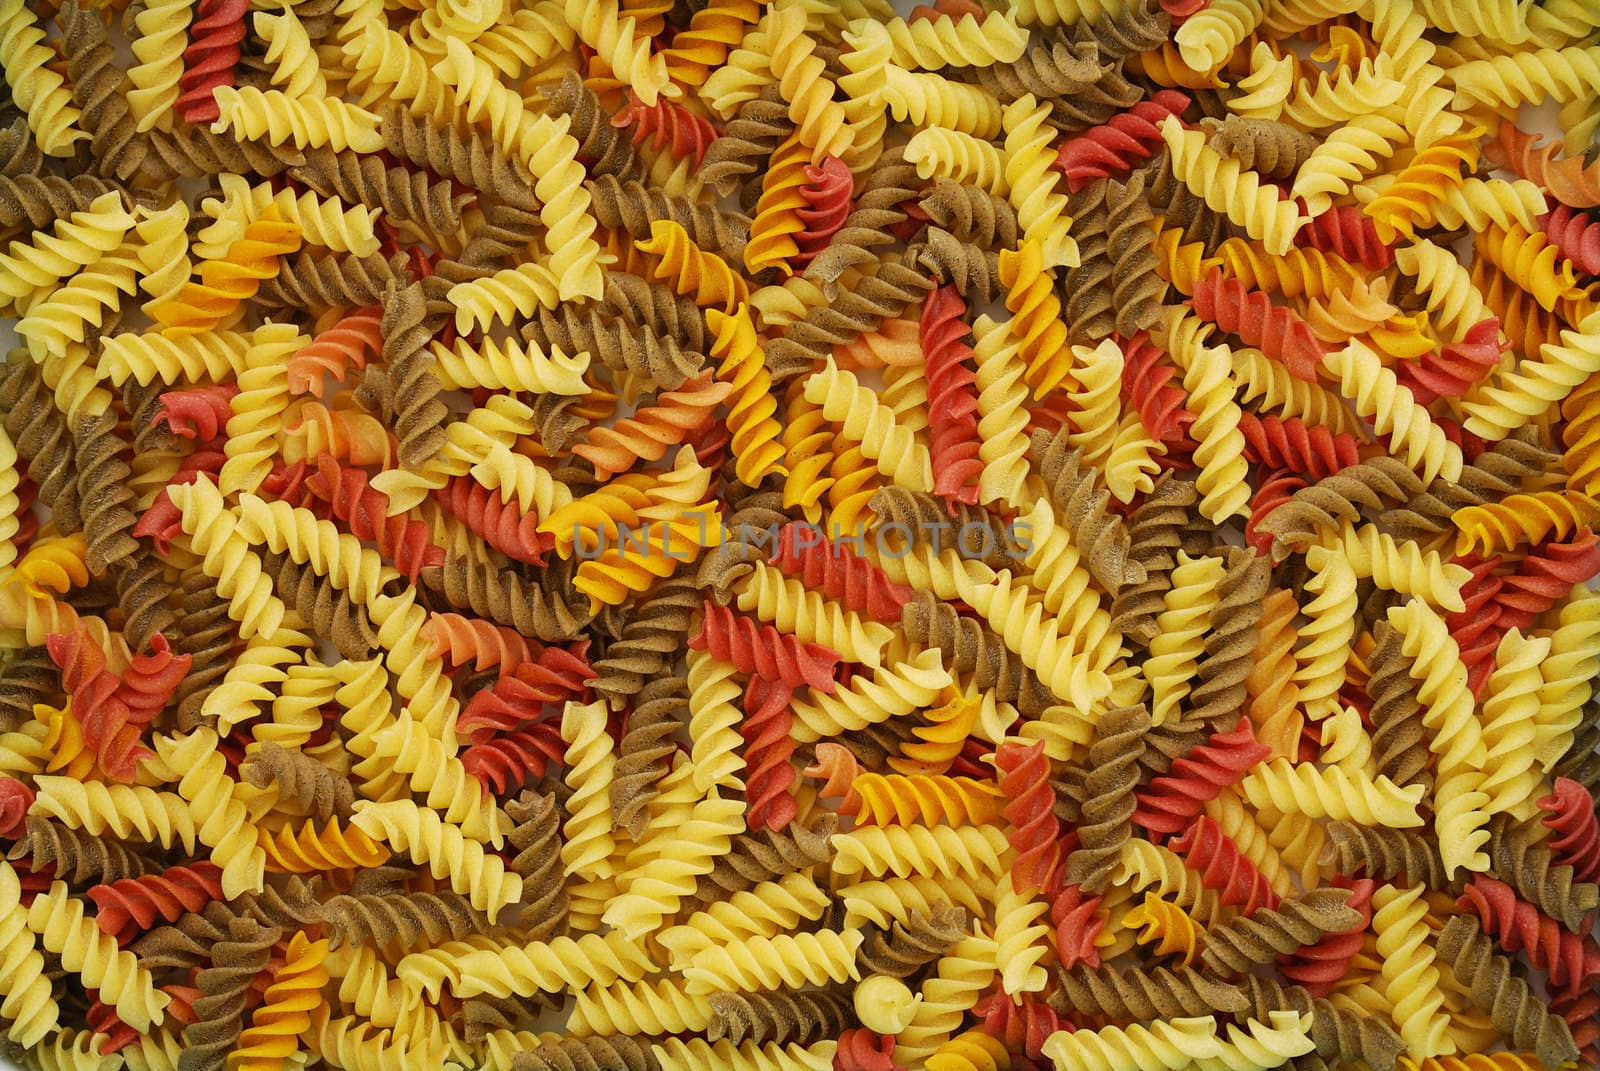 Multicolored dry fusilli pasta background